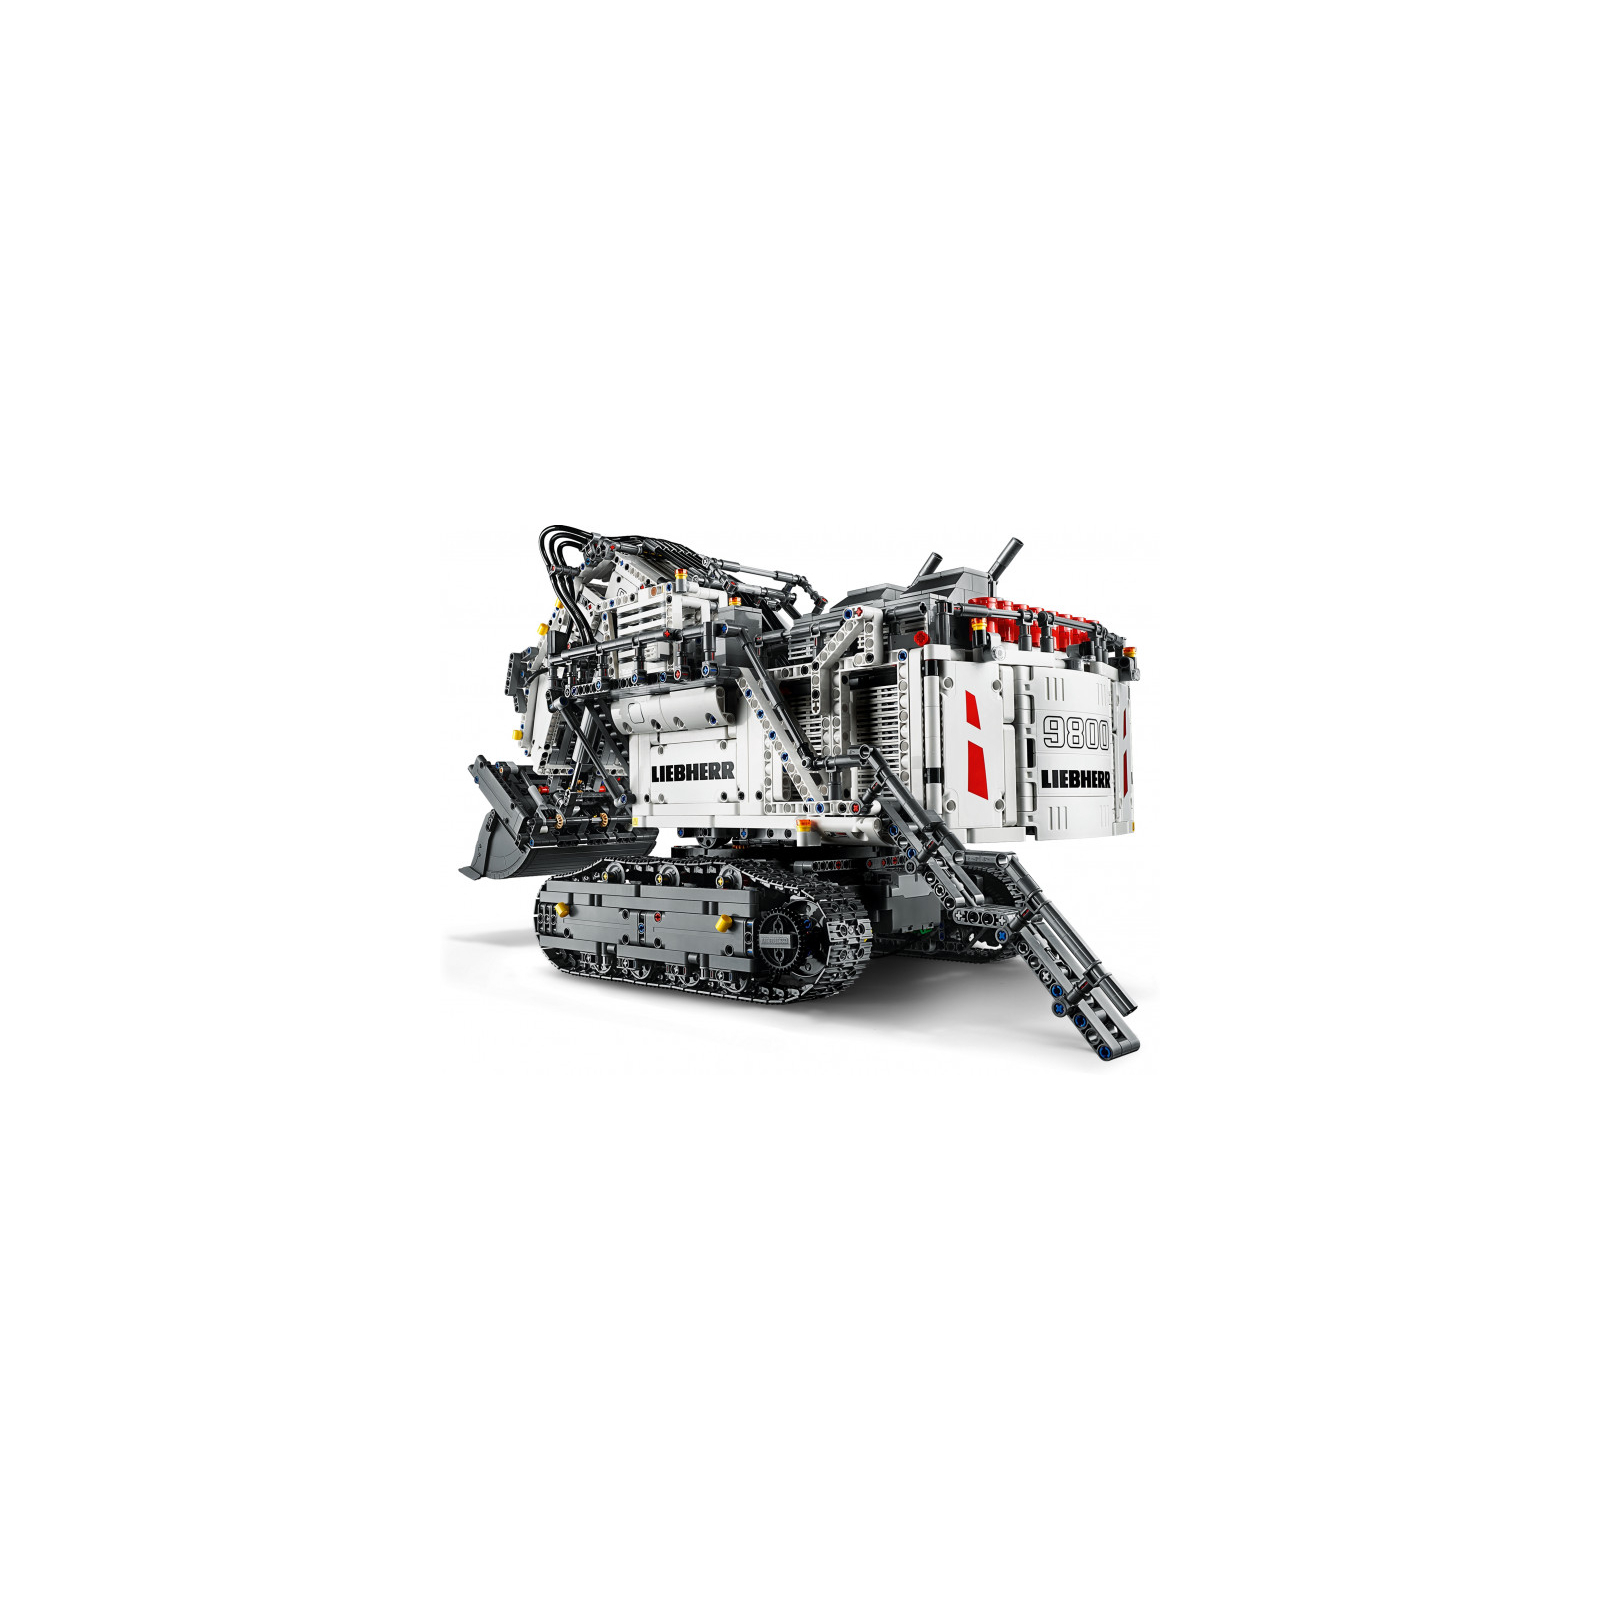 Конструктор LEGO Technic Экскаватор Liebherr R 9800 4108 деталей (42100) изображение 8